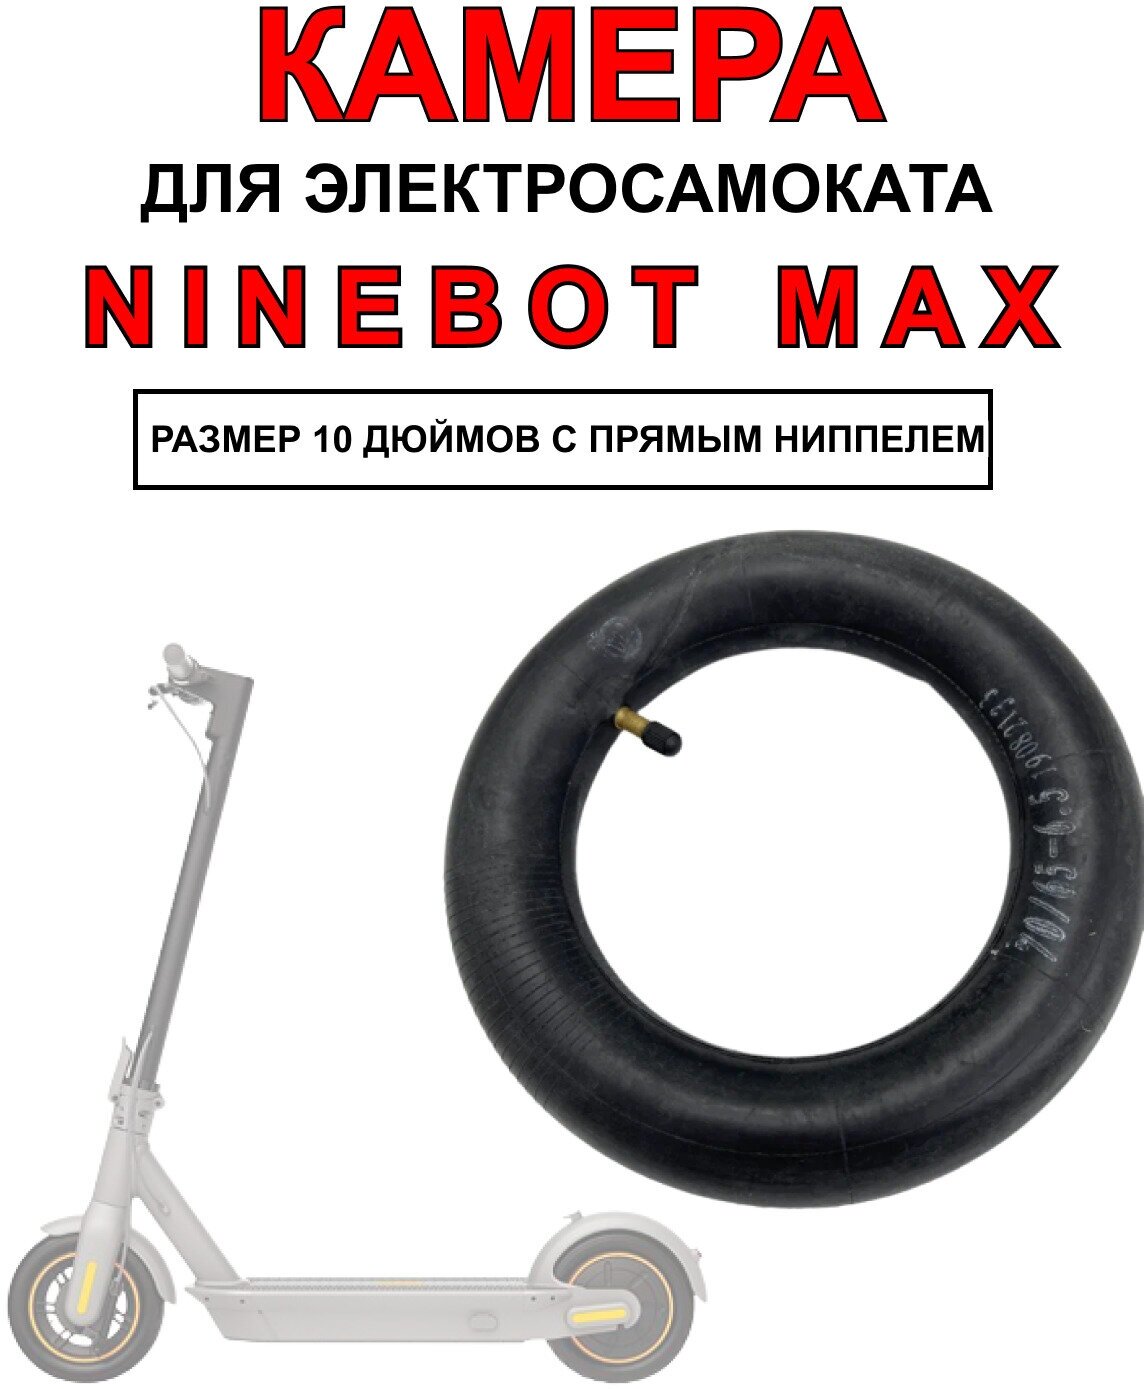 Камера для электросамоката Ninebot Max, 1 штука